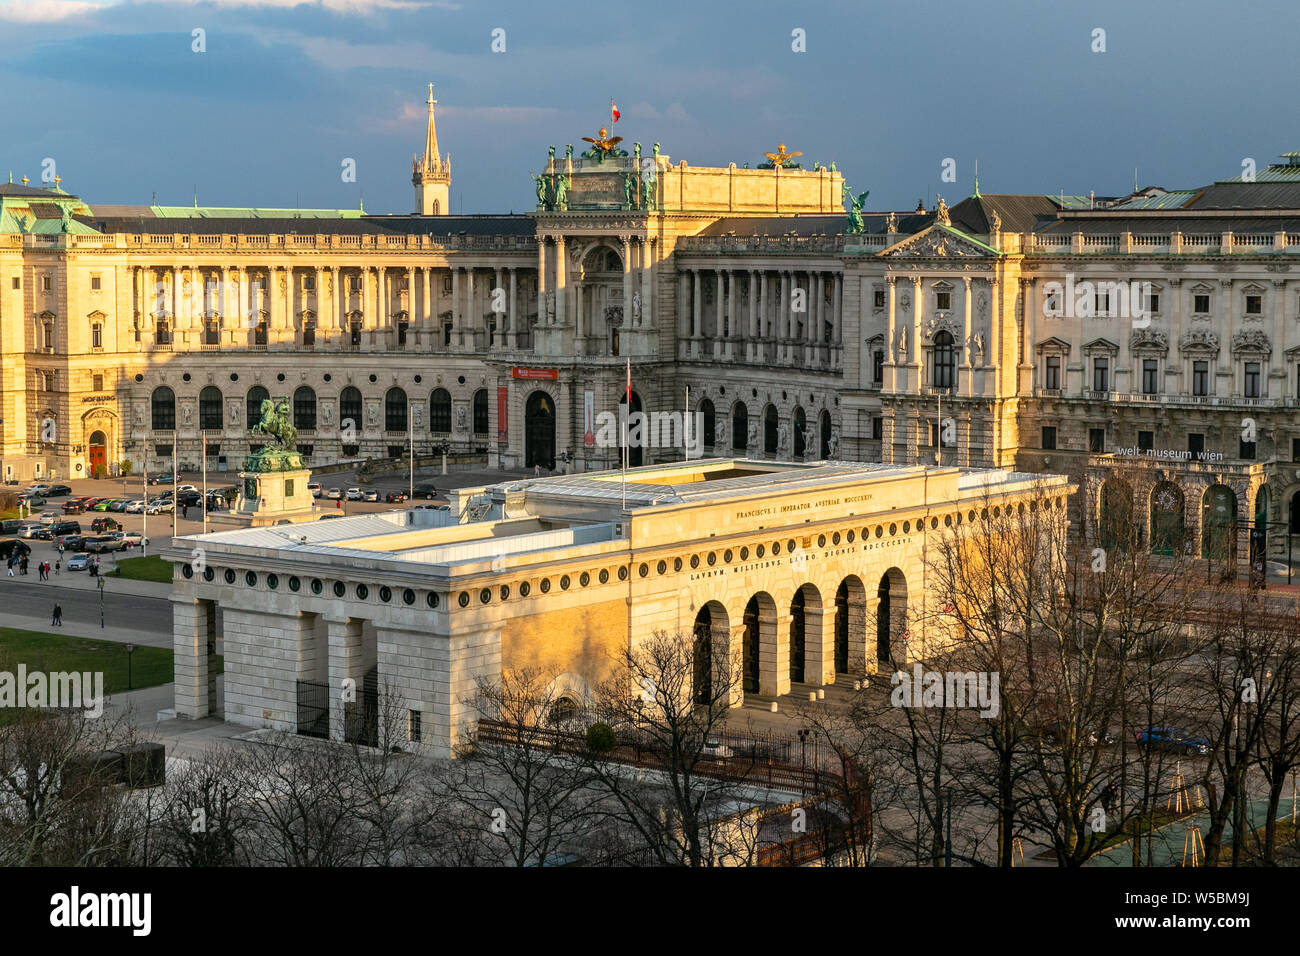 Dachterrasse mit Blick auf die Hofburg vom Natural History Museum. Die Hofburg ist der ehemalige Kaiserpalast in Wien, Österreich. Stockfoto